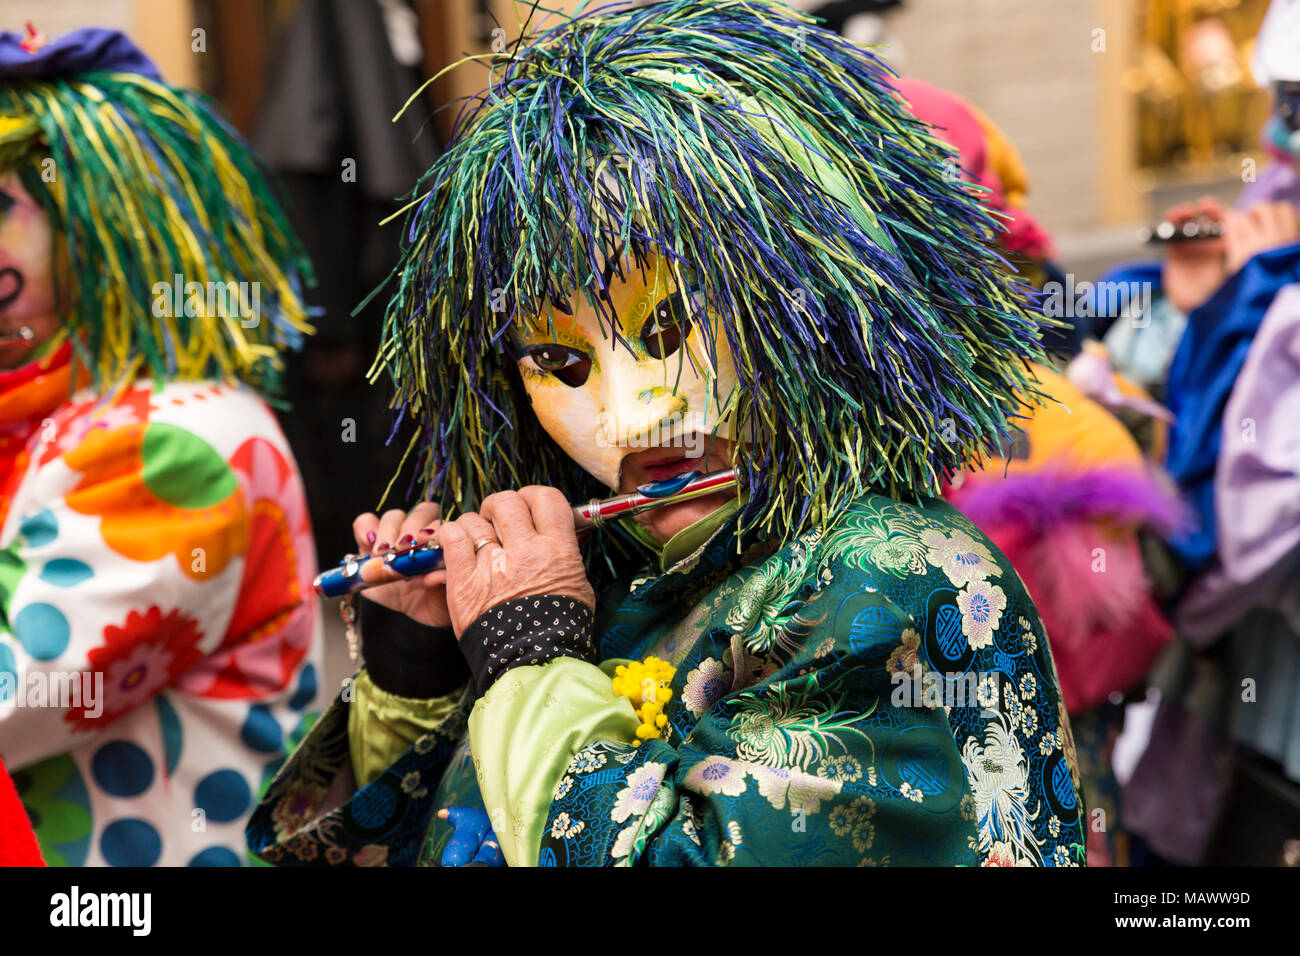 Carnaval de Bâle. Schnabelgasse, Bâle, Suisse - 21 février 2018. Close-up d'une flûte jouer reveler avec un beau costume et masque Banque D'Images